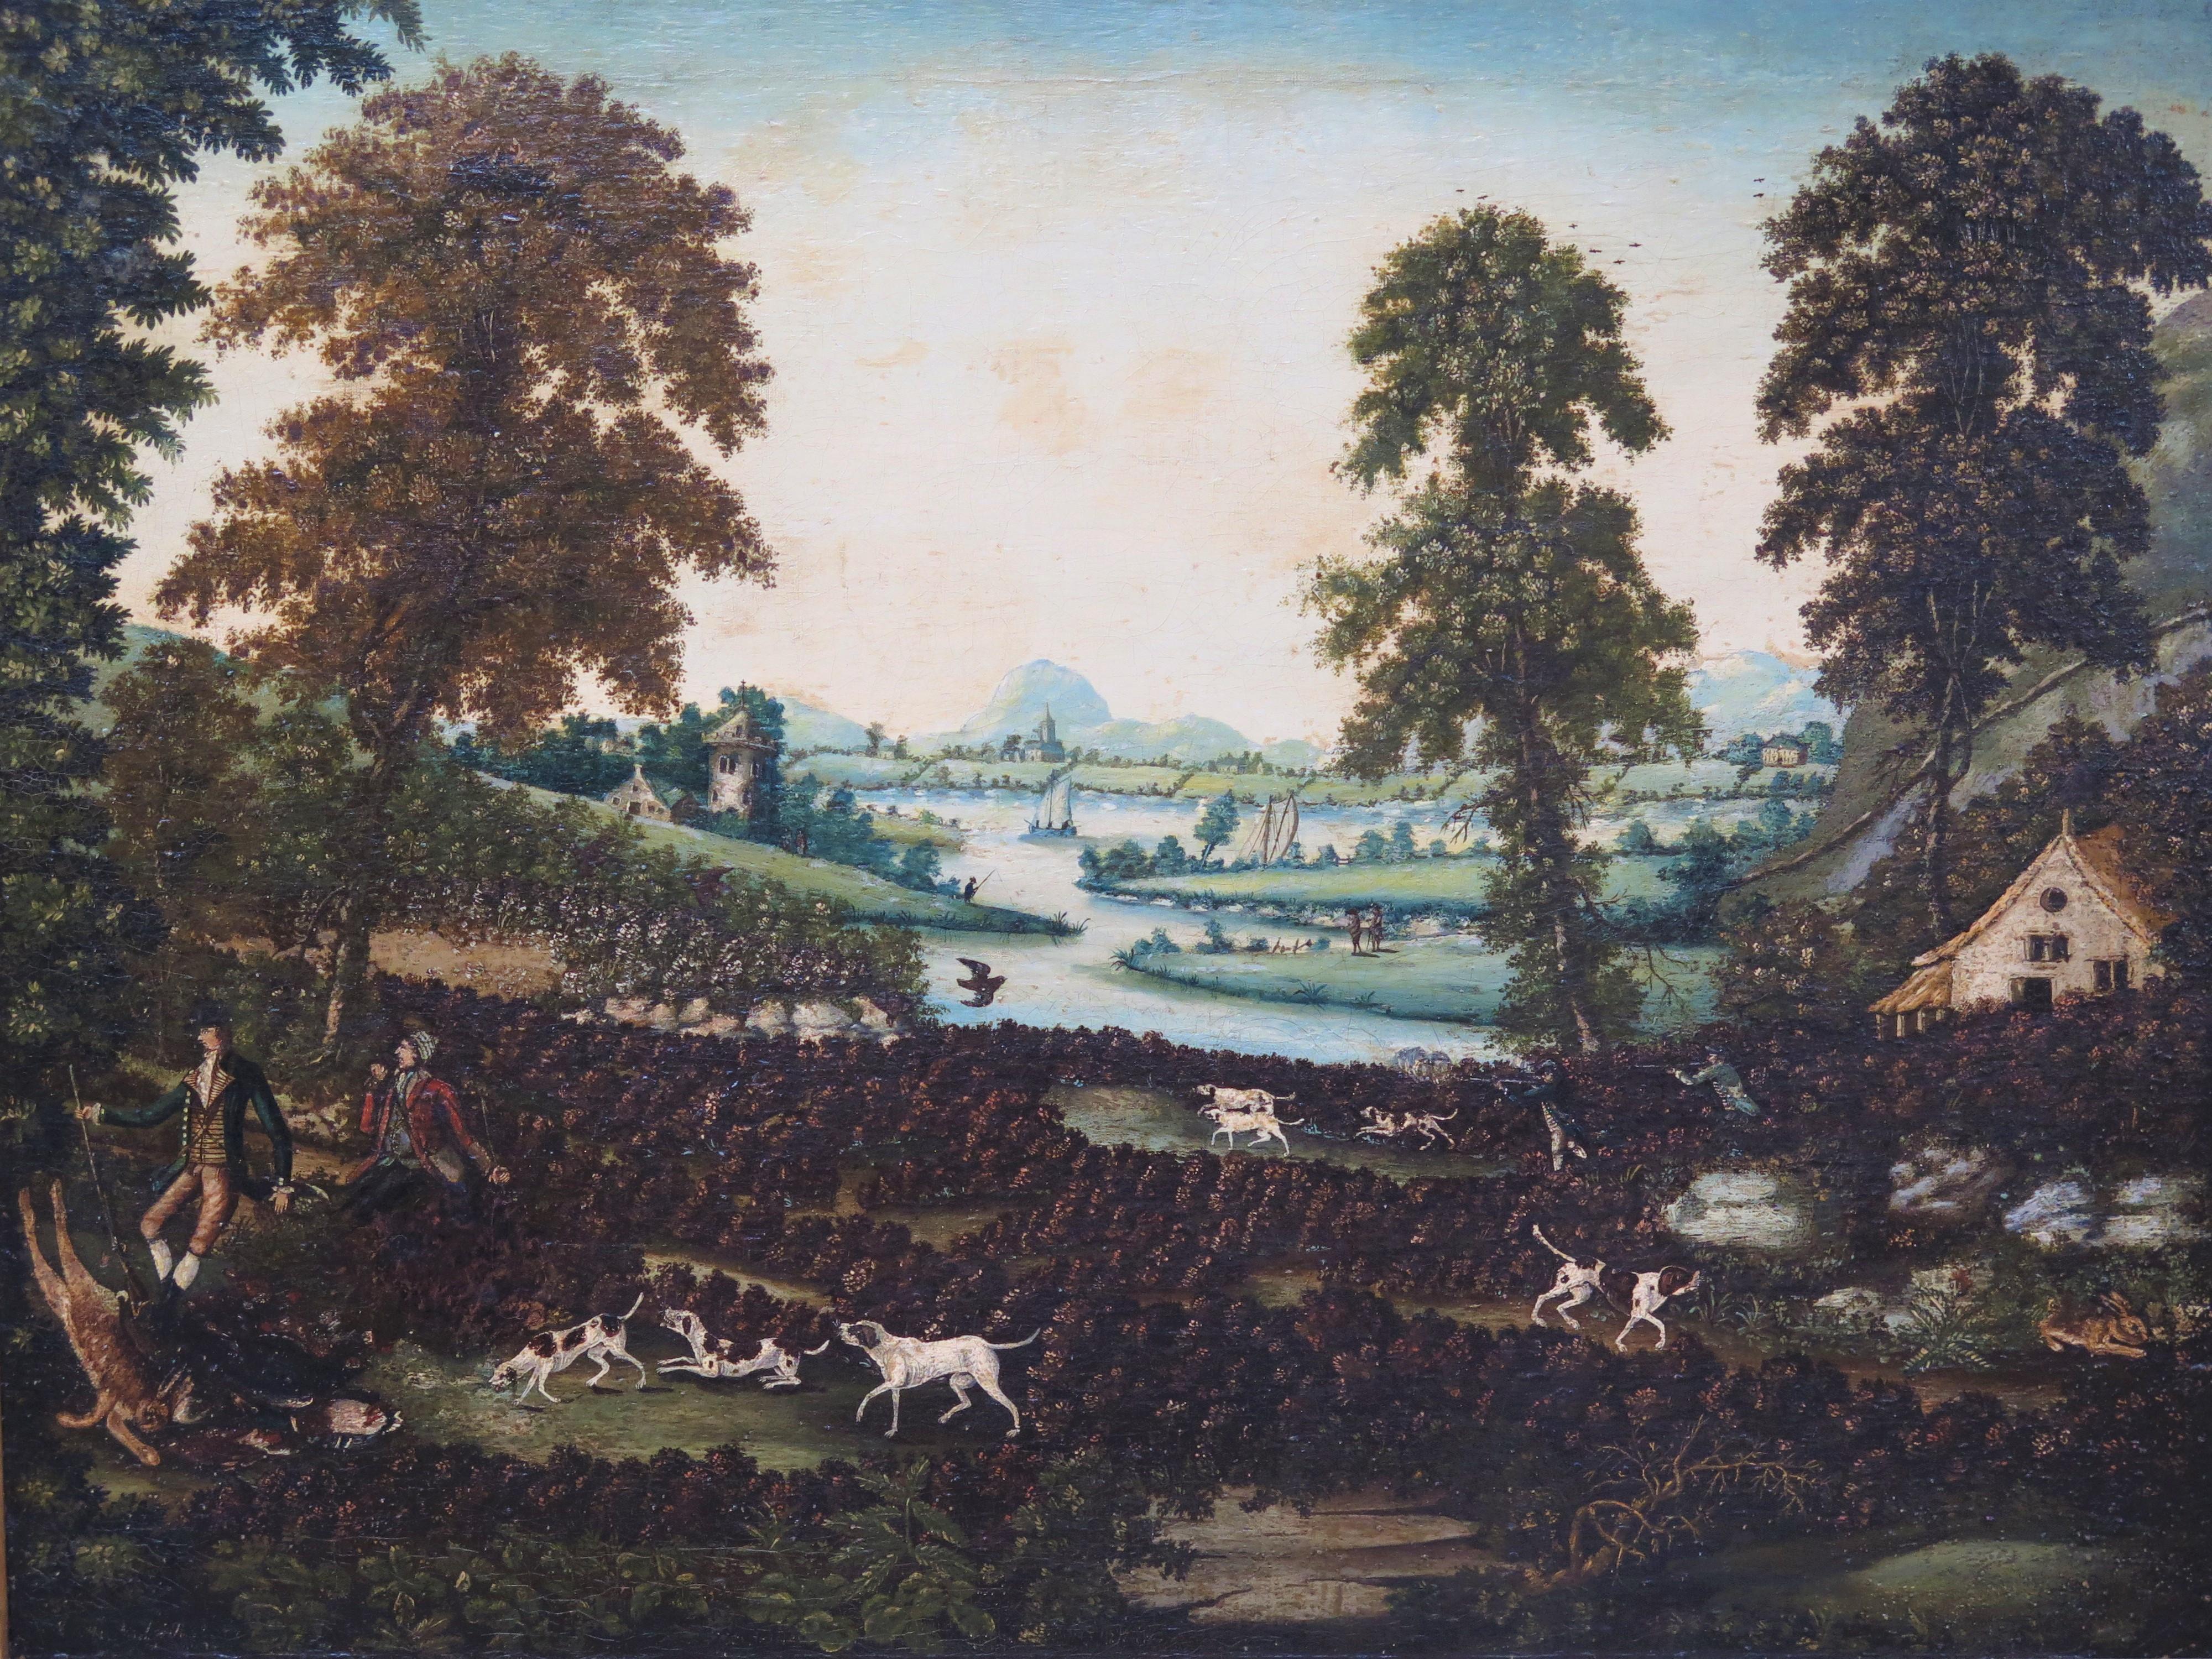 Scène de chasse anglaise encadrée de la fin du XVIIIe siècle, huile sur toile,  Deux hommes se reposent alors qu'ils chassent de gros lièvres/lapins avec une meute de chiens courants (en bas à gauche) tandis qu'un autre couple de chasseurs vise leur